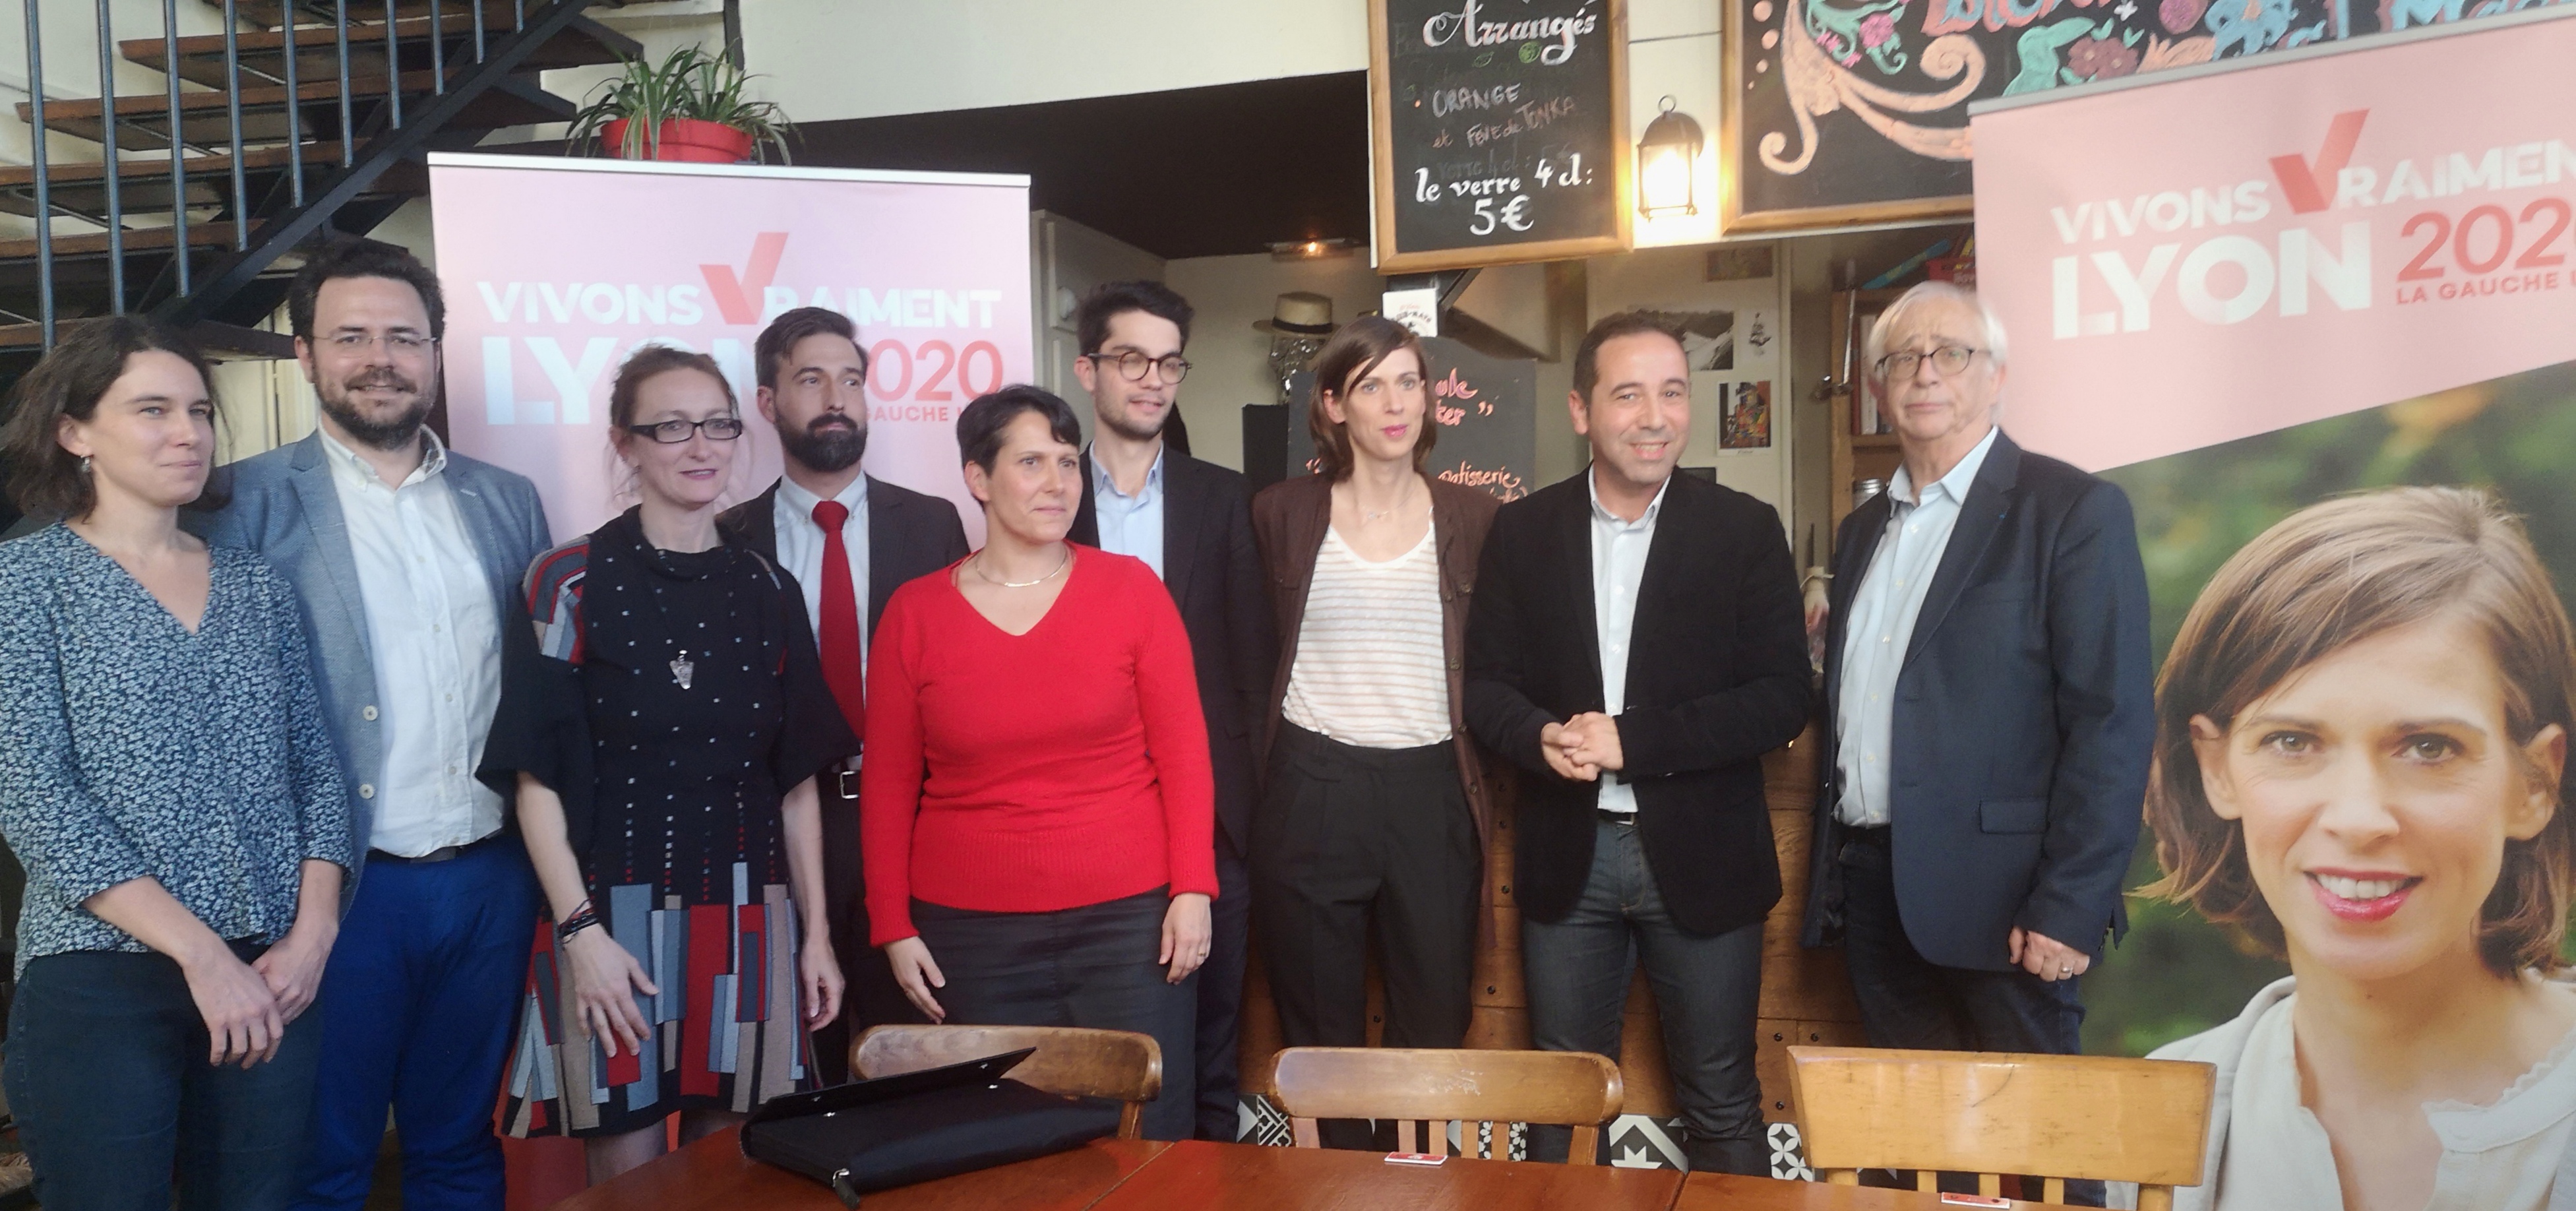 Municipales 2020 : La liste de la gauche unie « Vivons vraiment Lyon » présente ses candidats